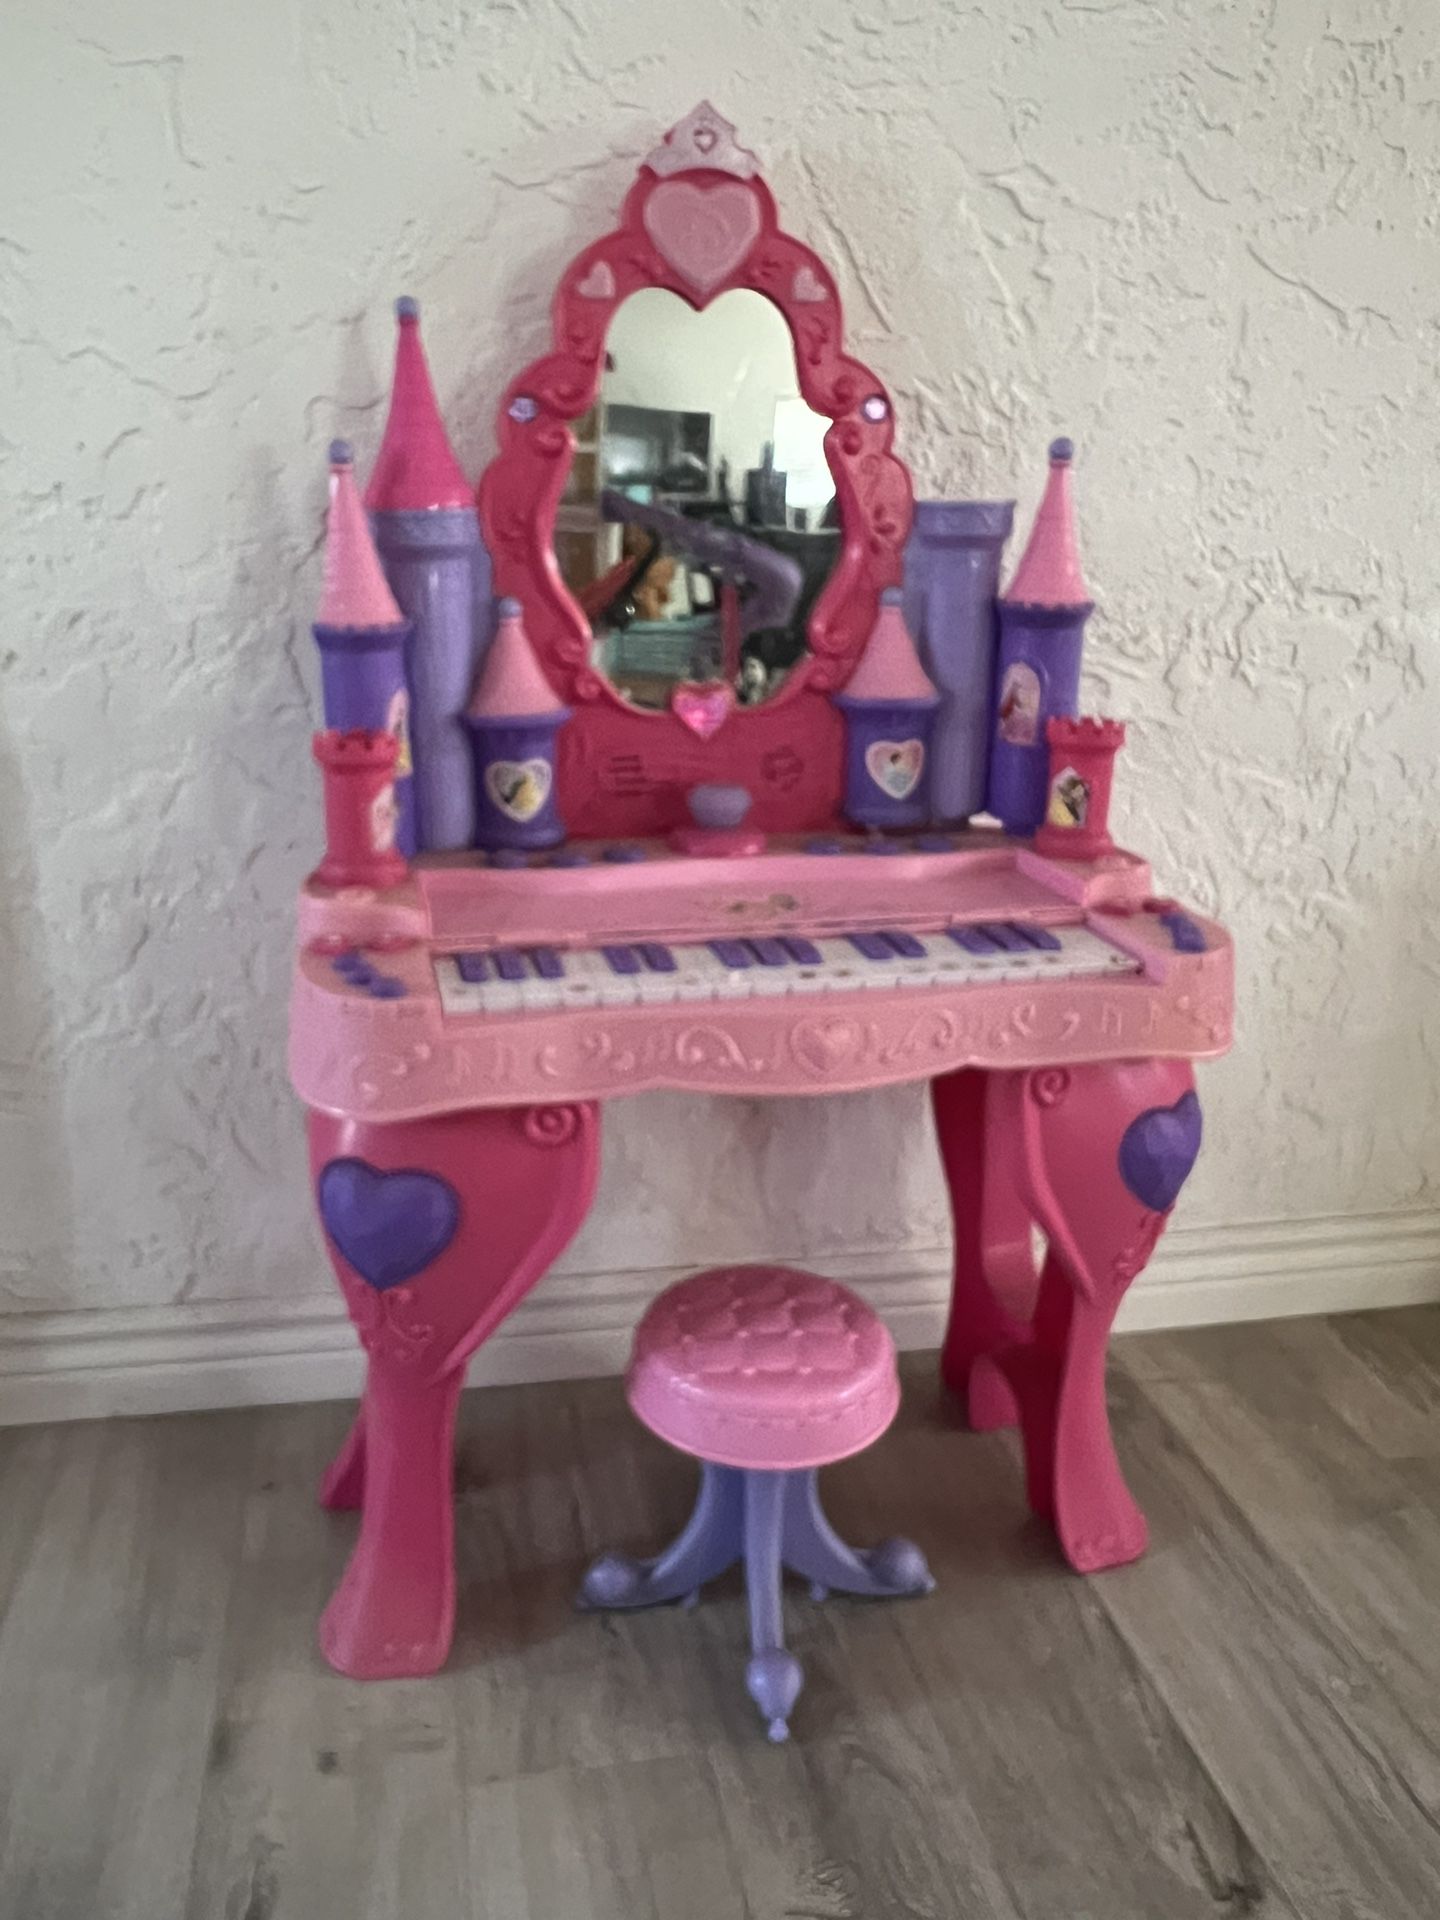 Princess Vanity And Piano 